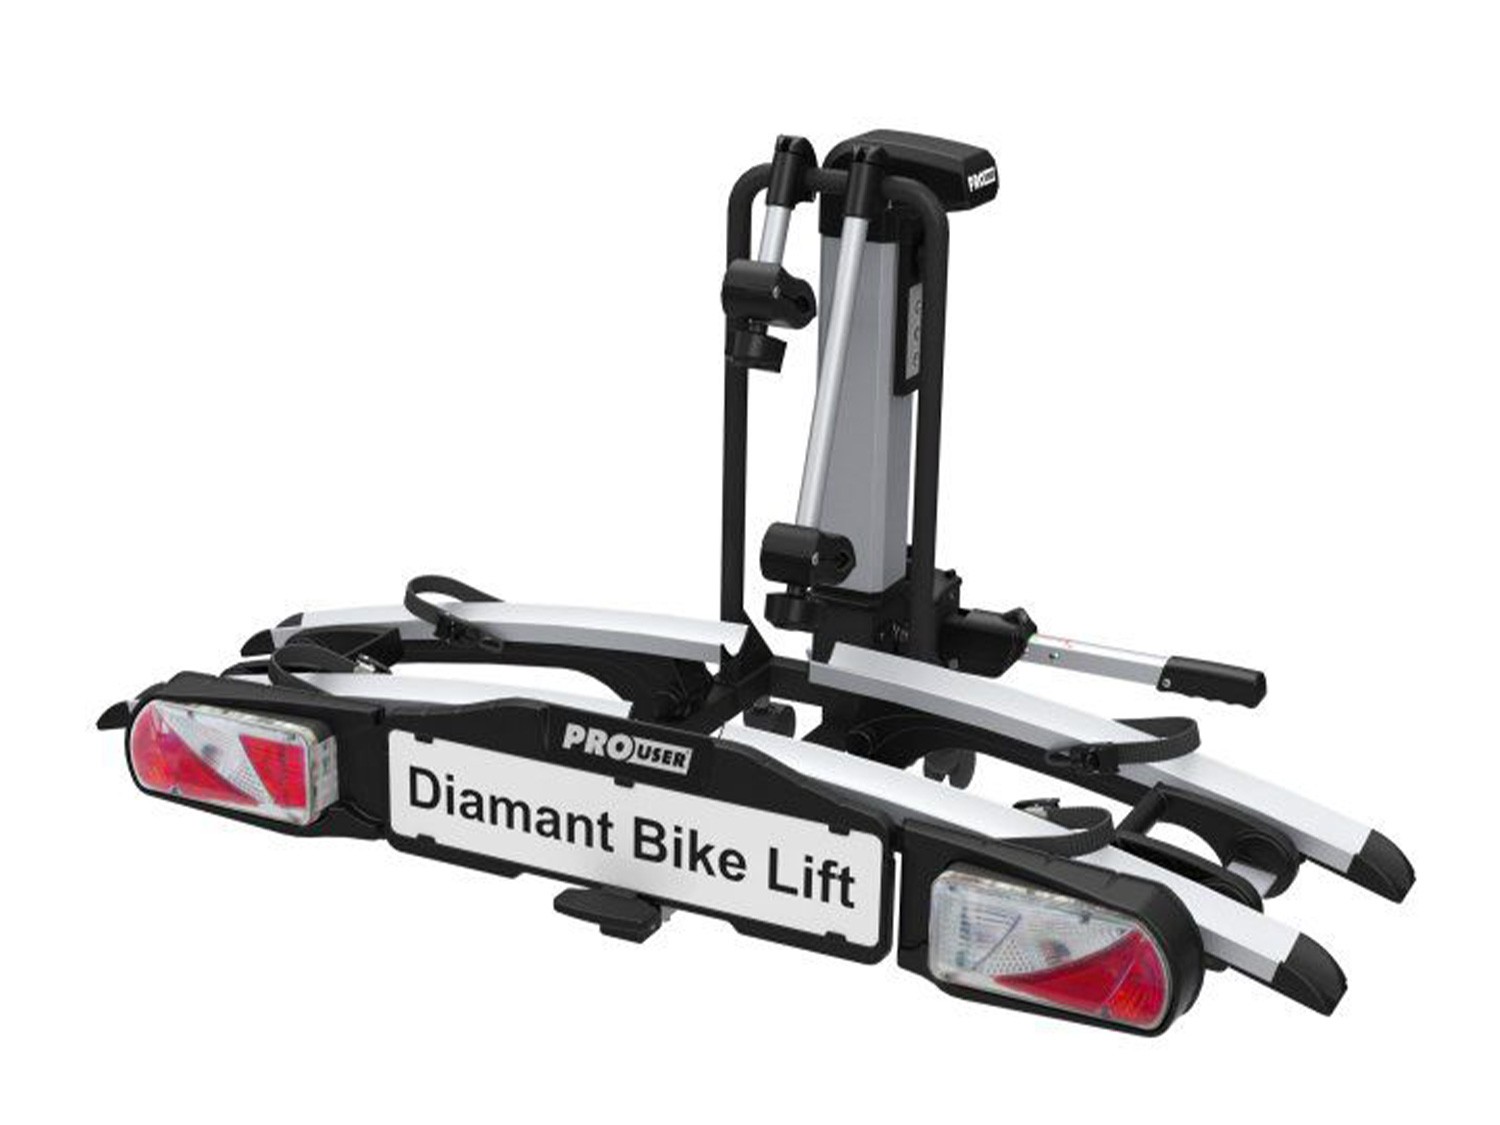 Portabici Diamant Bike Lift - 2 bici - compatibile e.bike (port. 60Kg.)